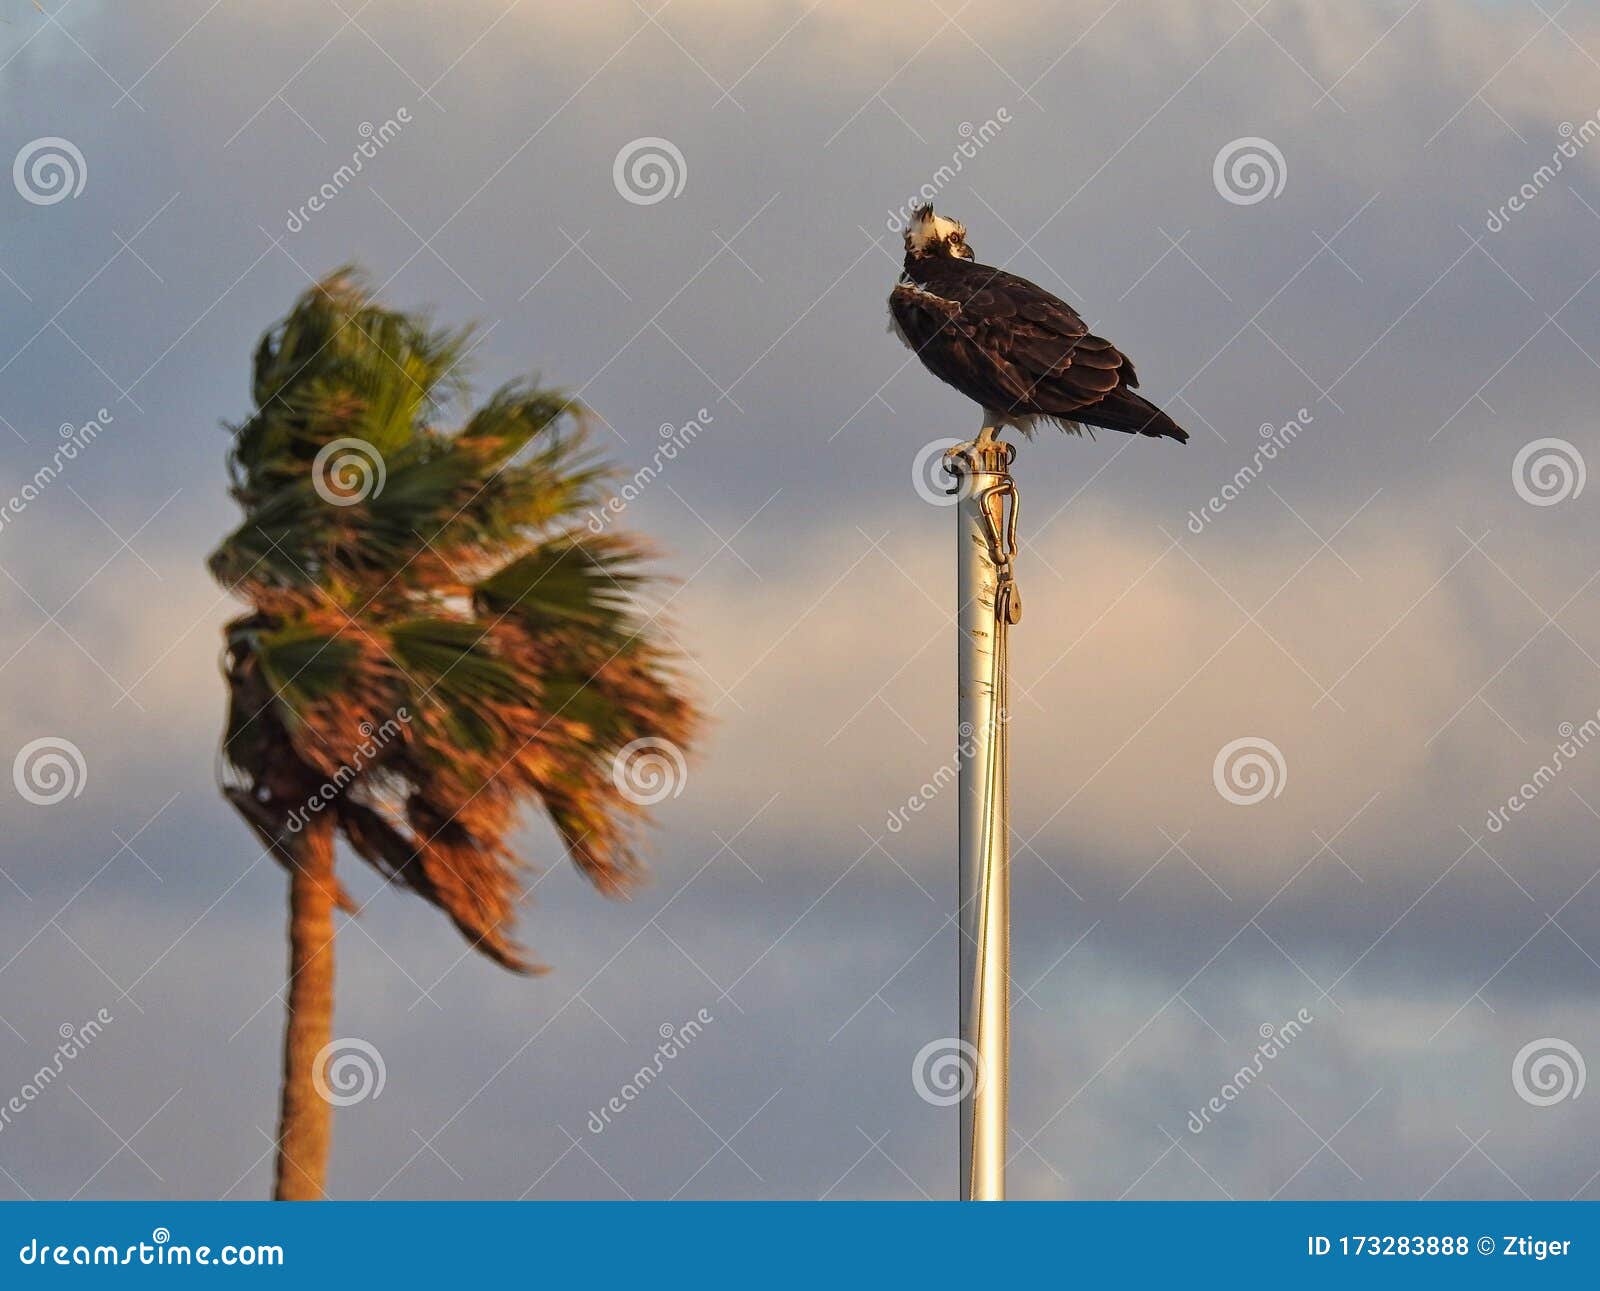 osprey sitting on flagpole